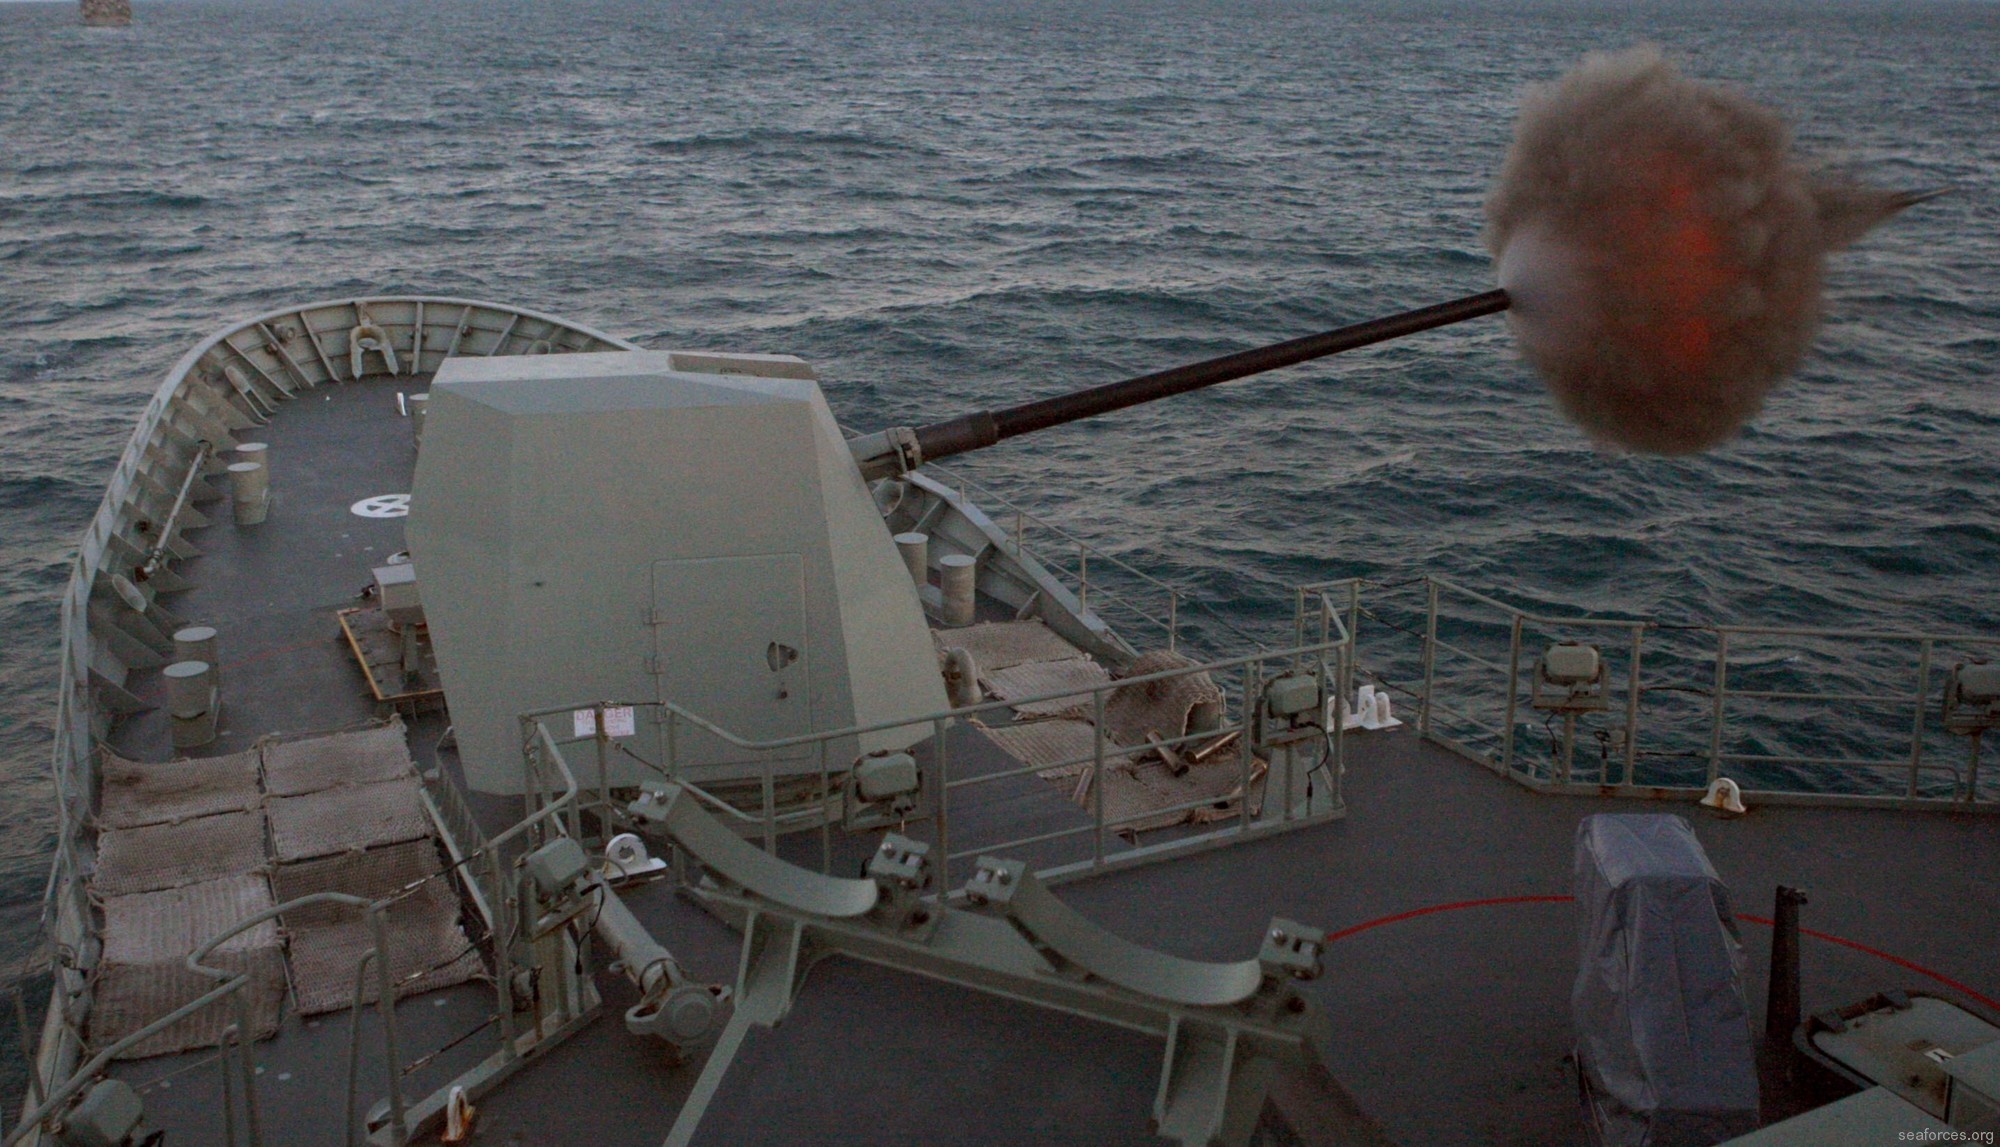 ffh-155 hms ballarat anzac class frigate royal australian navy 2011 40 mk-45 5" 54 caliber gun fire